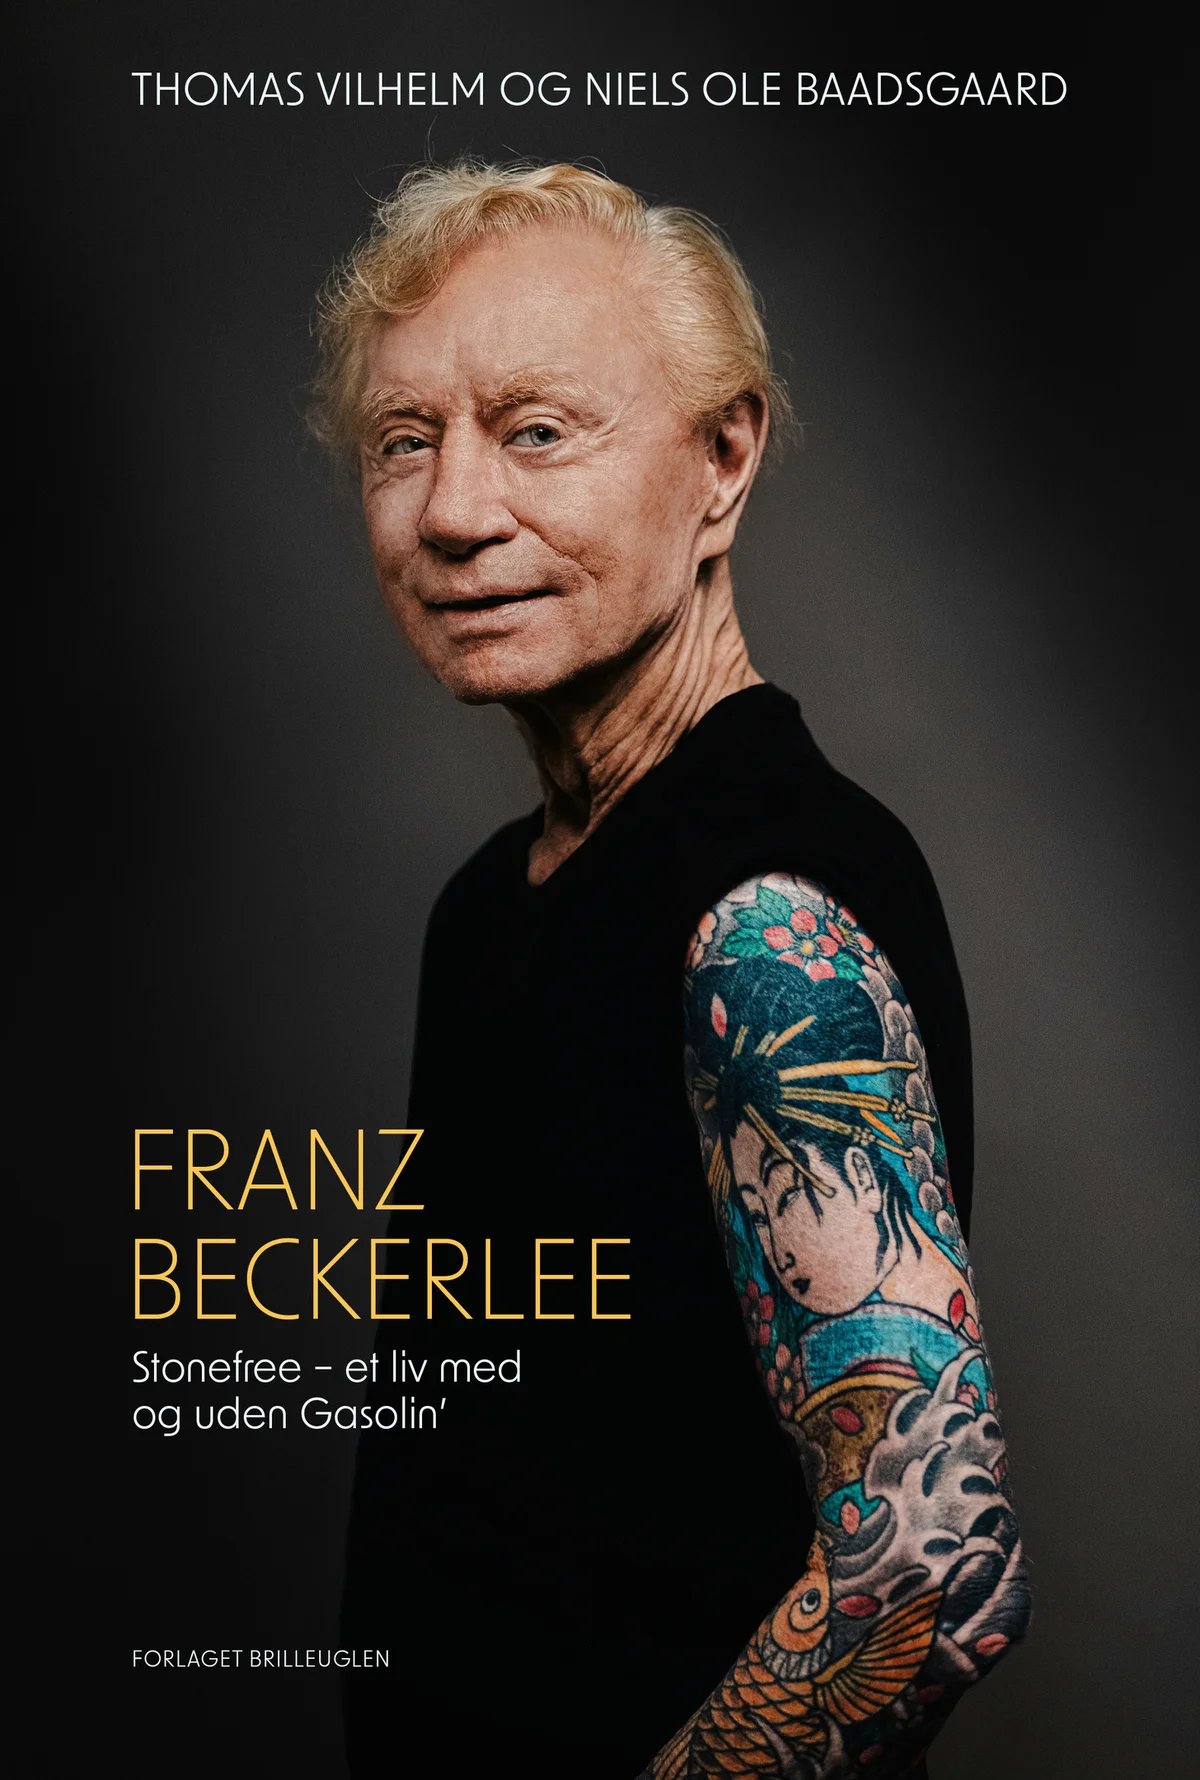 Franz Beckerlee - ’Rockgiganter og Mikrobryg’ i Roskilde